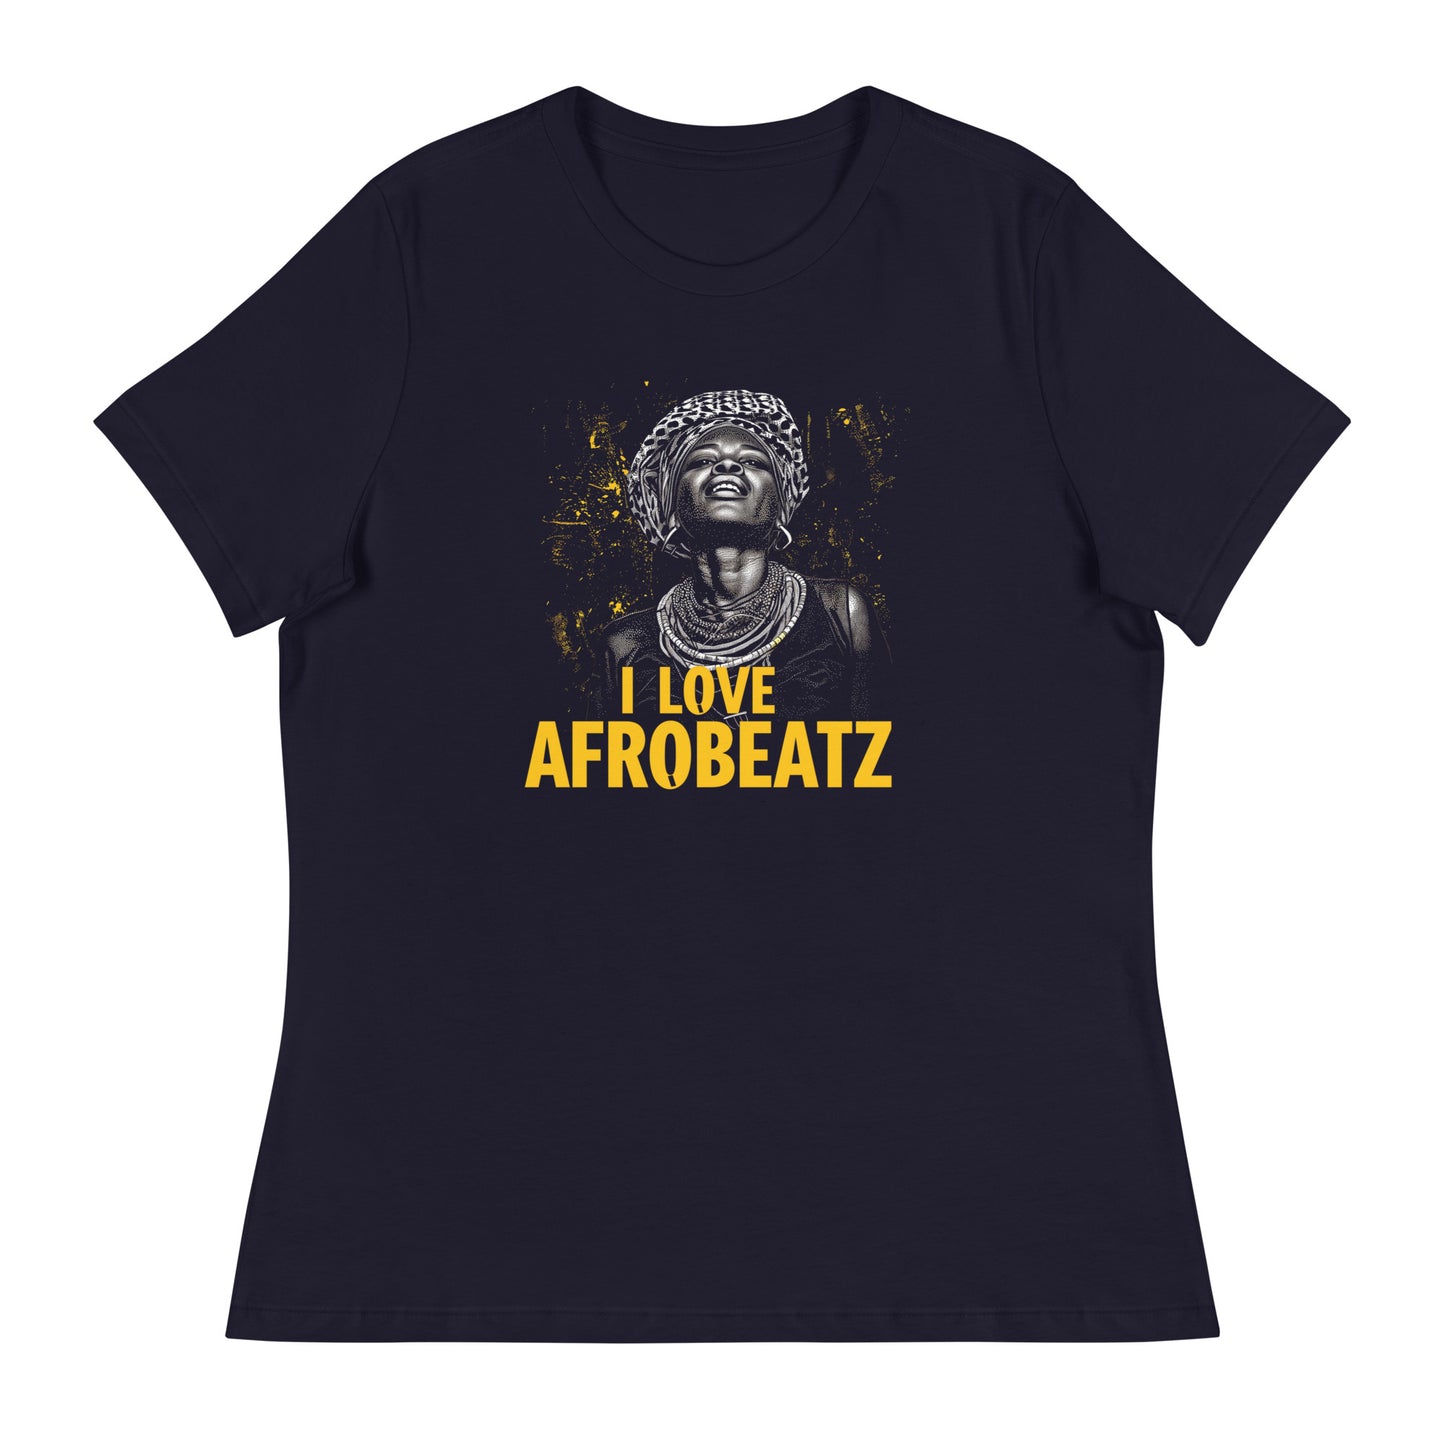 I LOVE AFROBEATZ - Women's Relaxed T-Shirt